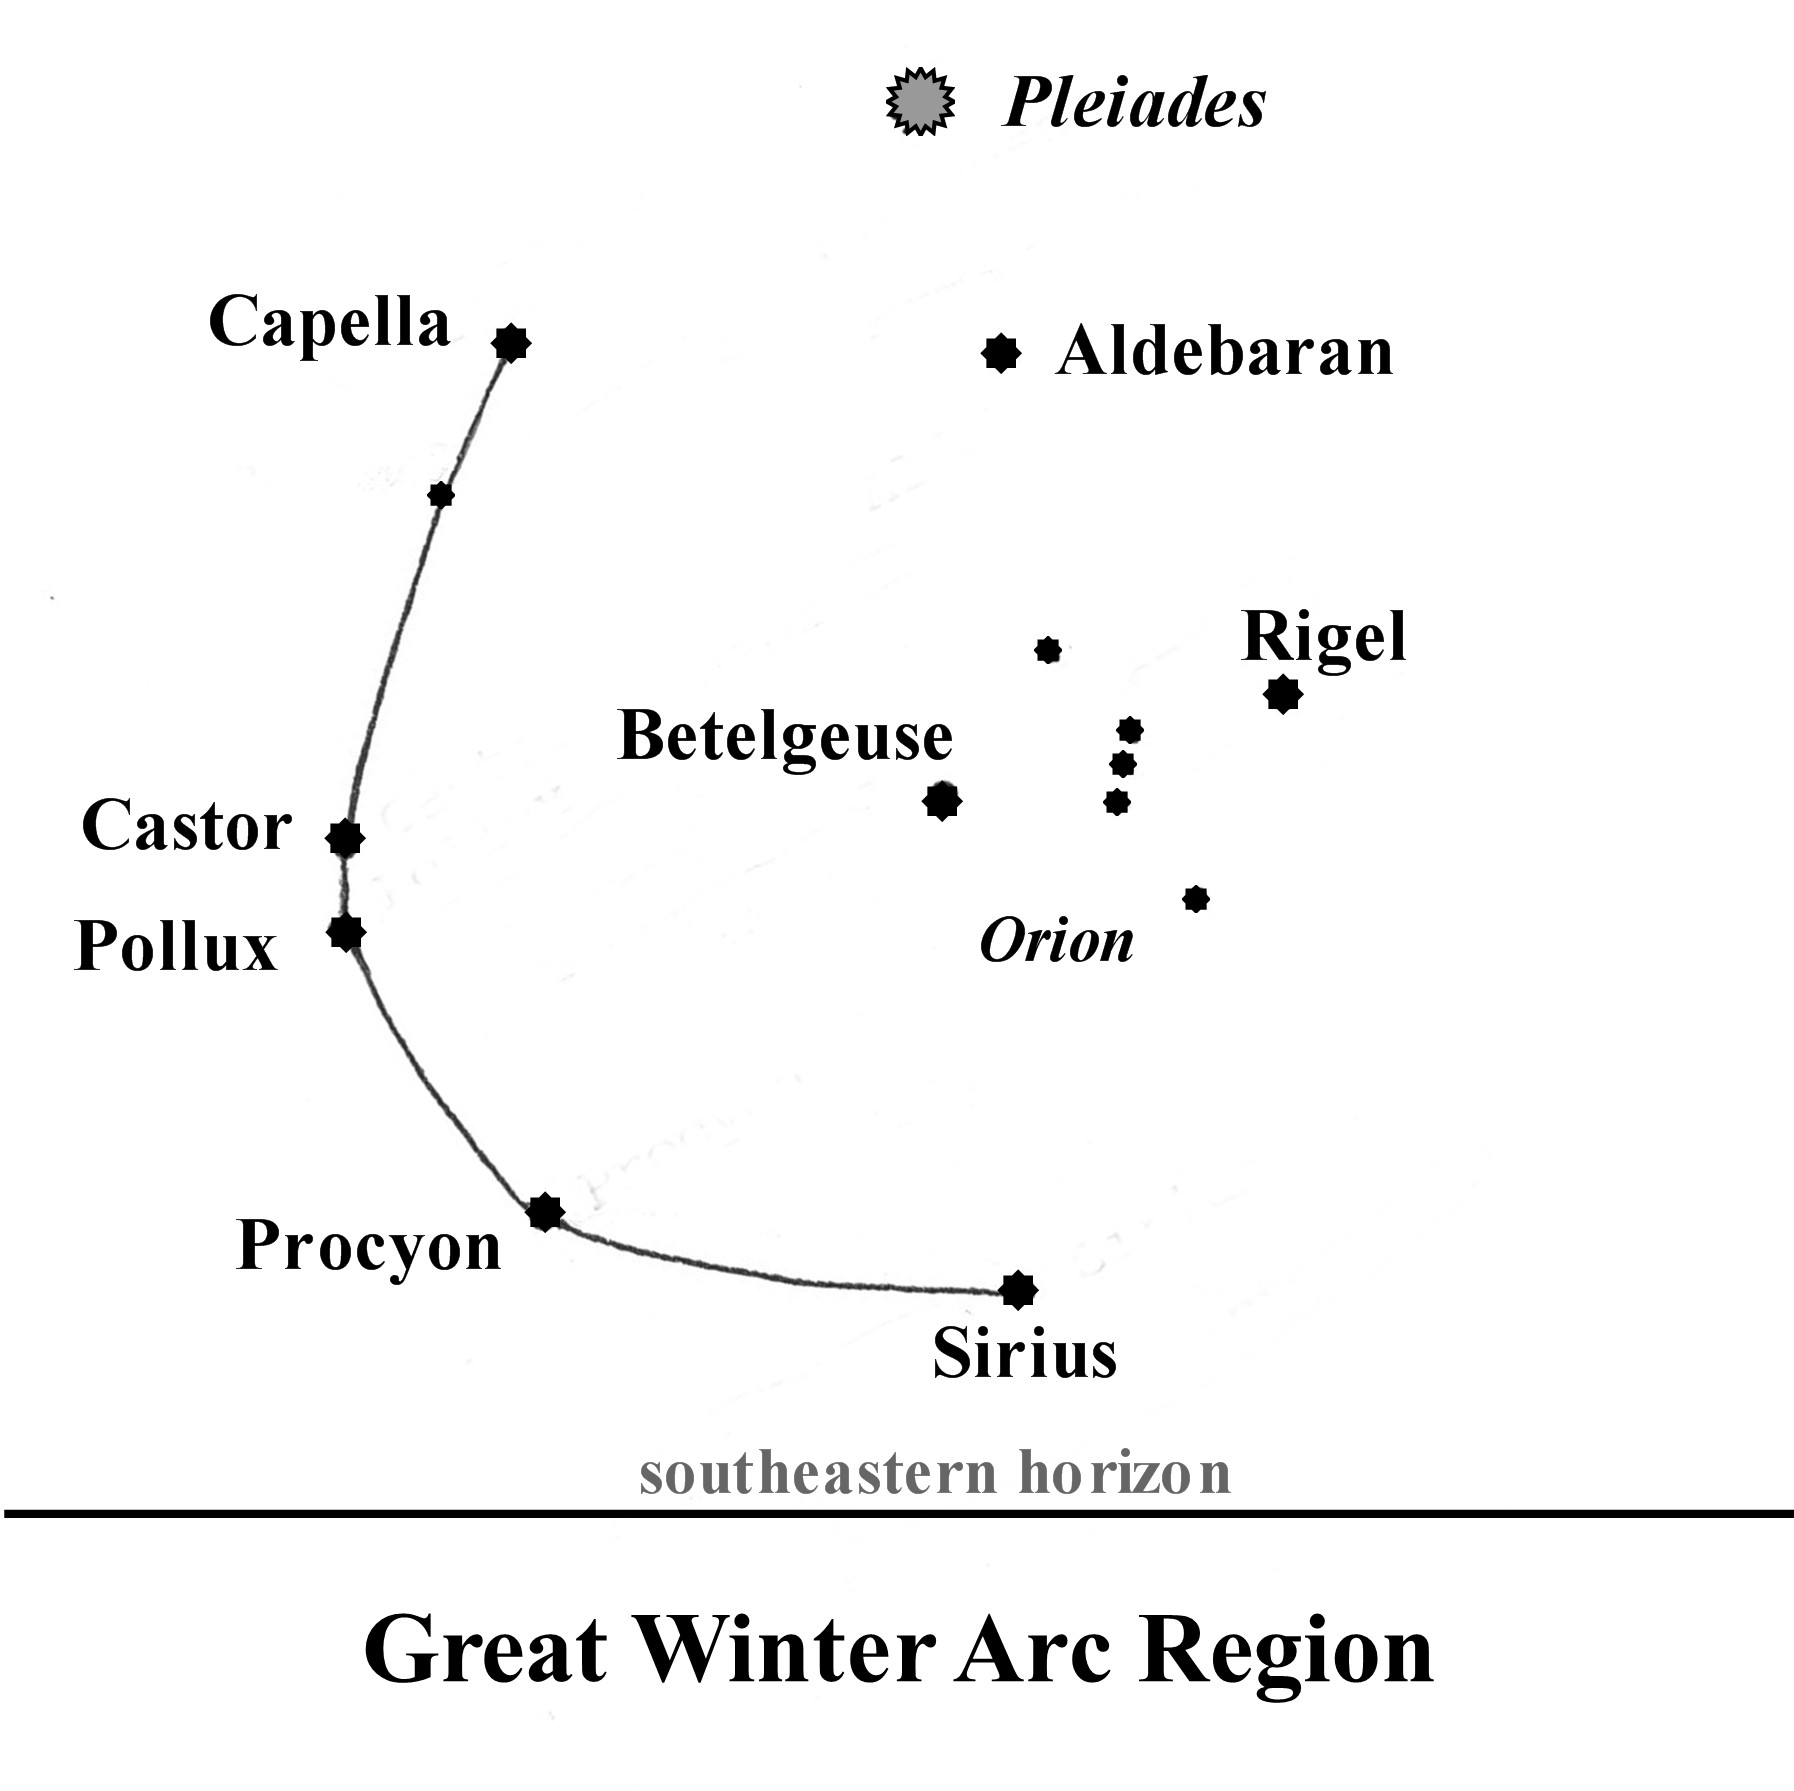 Great Winter Arc Region